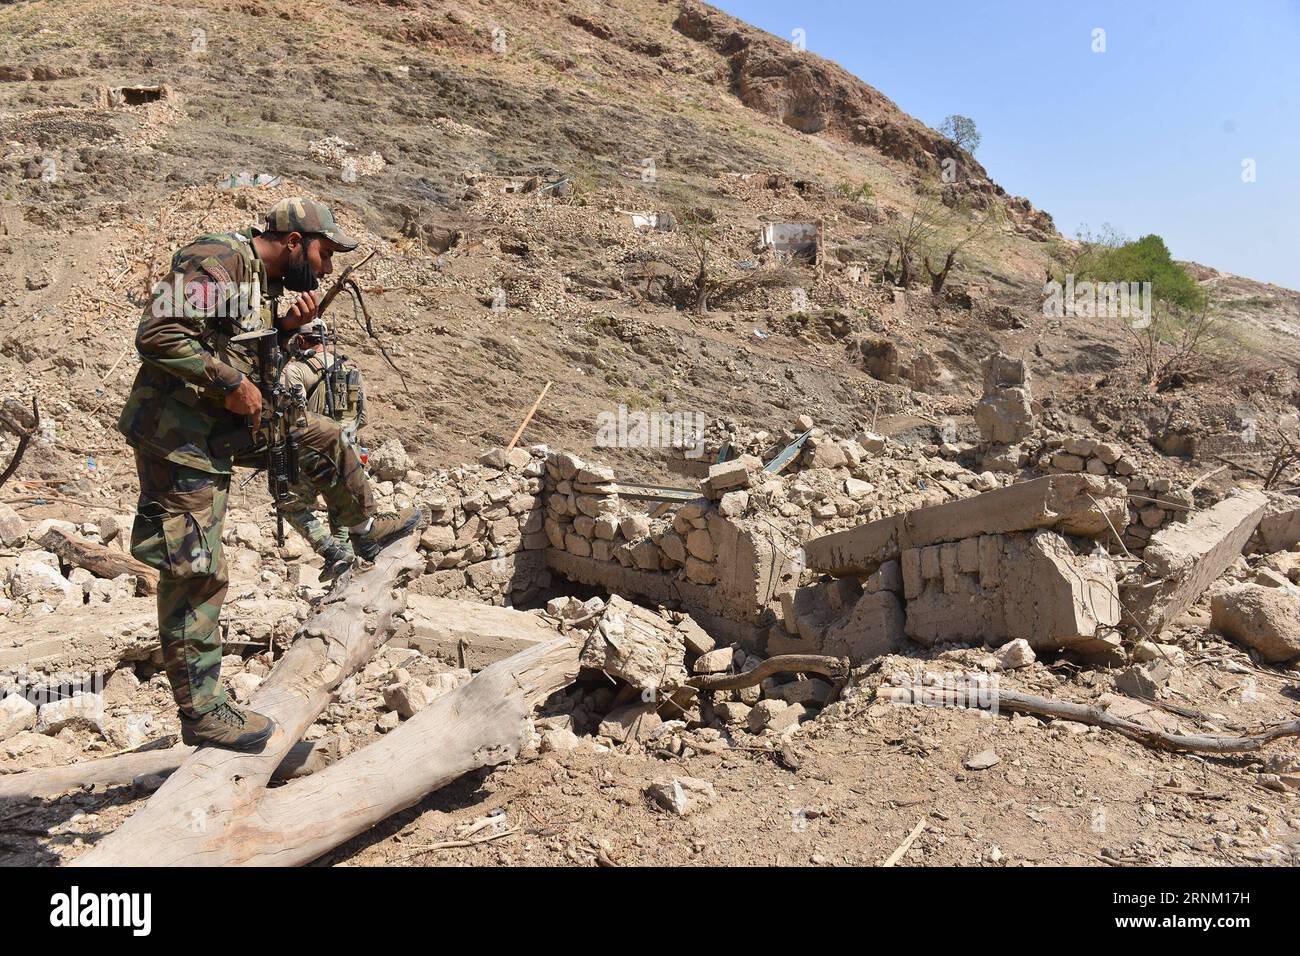 (170430) -- NANGARHAR, 30. April 2017 -- ein afghanischer Armeesoldat steht am Ort eines US-Bombenanschlags im Bezirk Achin der Provinz Nangarhar, Afghanistan, 28. April 2017. Am 13. April schlugen die US-Streitkräfte in Afghanistan einen IS-Höhlenkomplex durch die größte nicht-nukleare Bombe im bergigen Achin-Bezirk der Provinz, 120 km östlich von Kabul, wobei fast 100 IS-Kämpfer getötet und ein Versteck der Militanten zusammen mit mehreren Bunkern und Tunneln zerstört wurden. )(RH) AFGHANISTAN-NANGARHAR-USA DIE BOMBENANGRIFFE NACH RahmanxSafi PUBLICATIONxNOTxINxCHN Nangarhar April 30 2017 auf afghanischen Soldat stehen AUF Stockfoto